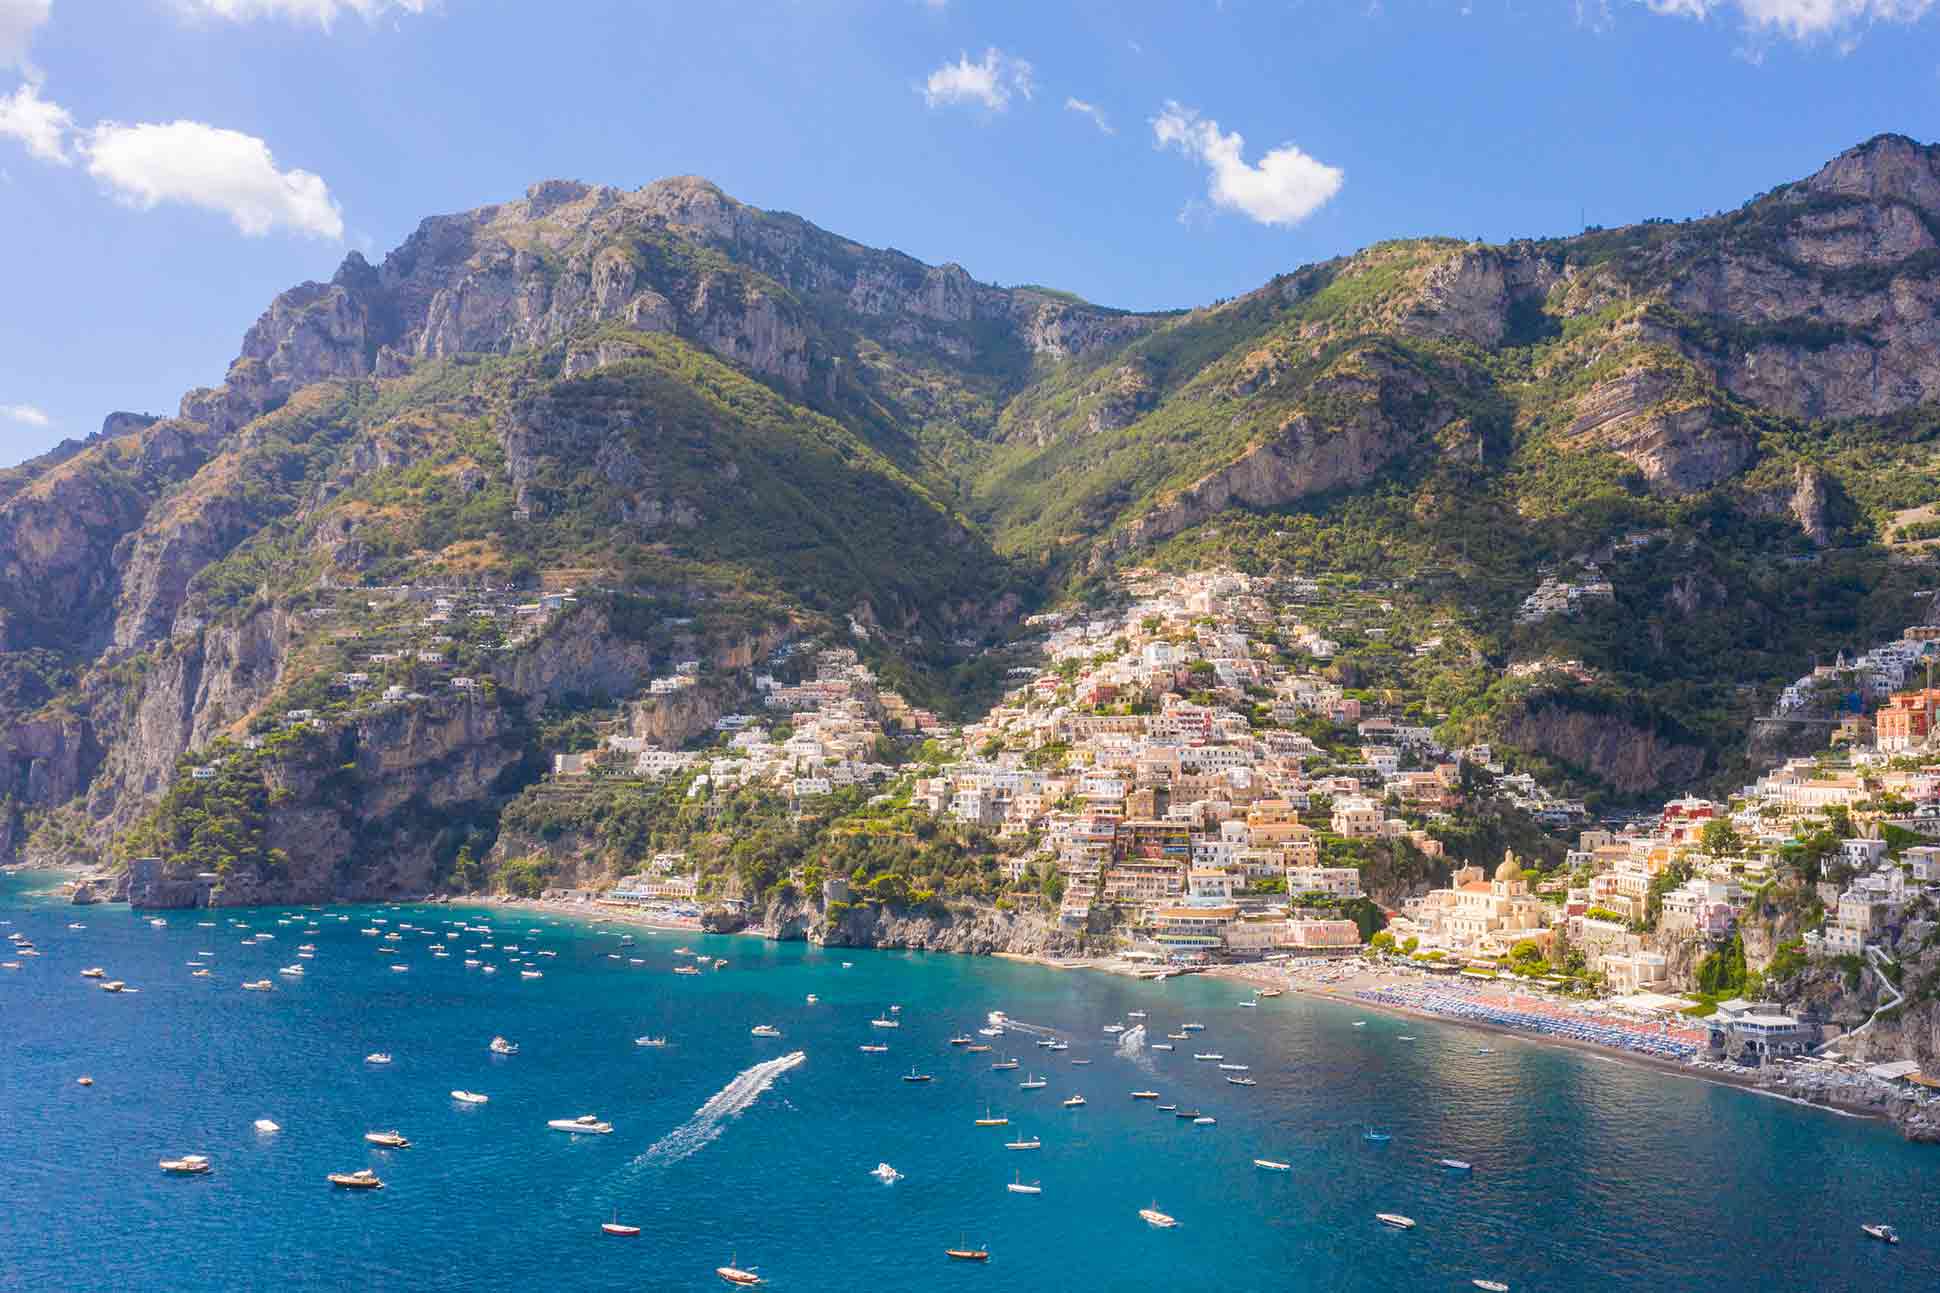 Capri on Italy's coasts